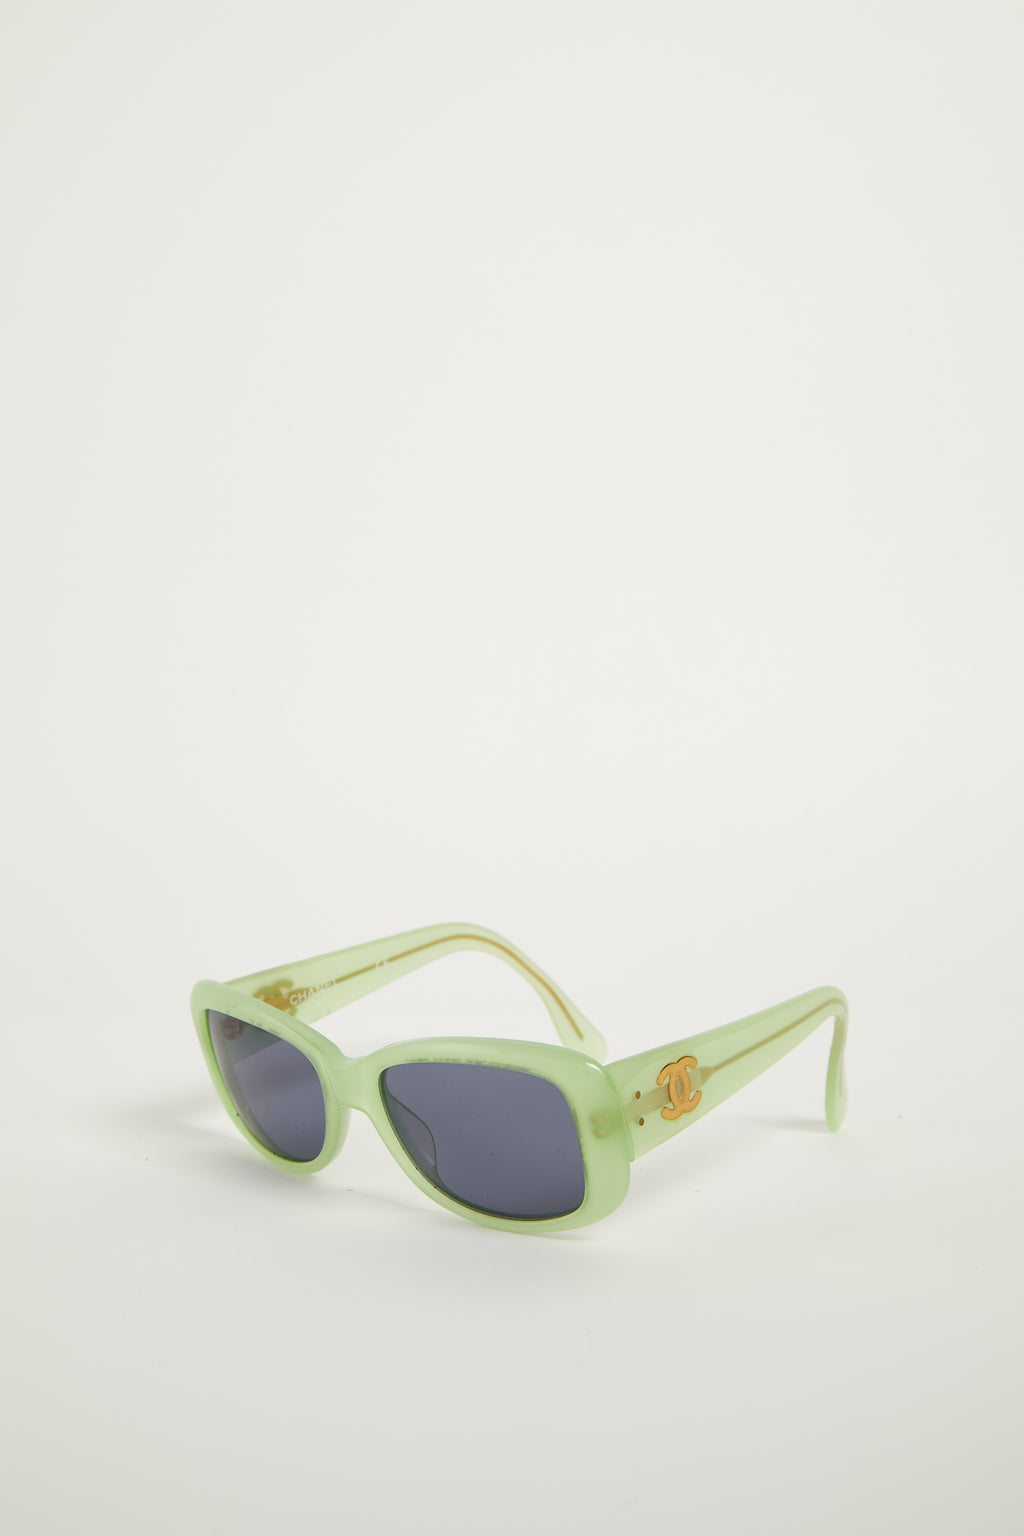 2000s Chanel Green CC Sunglasses